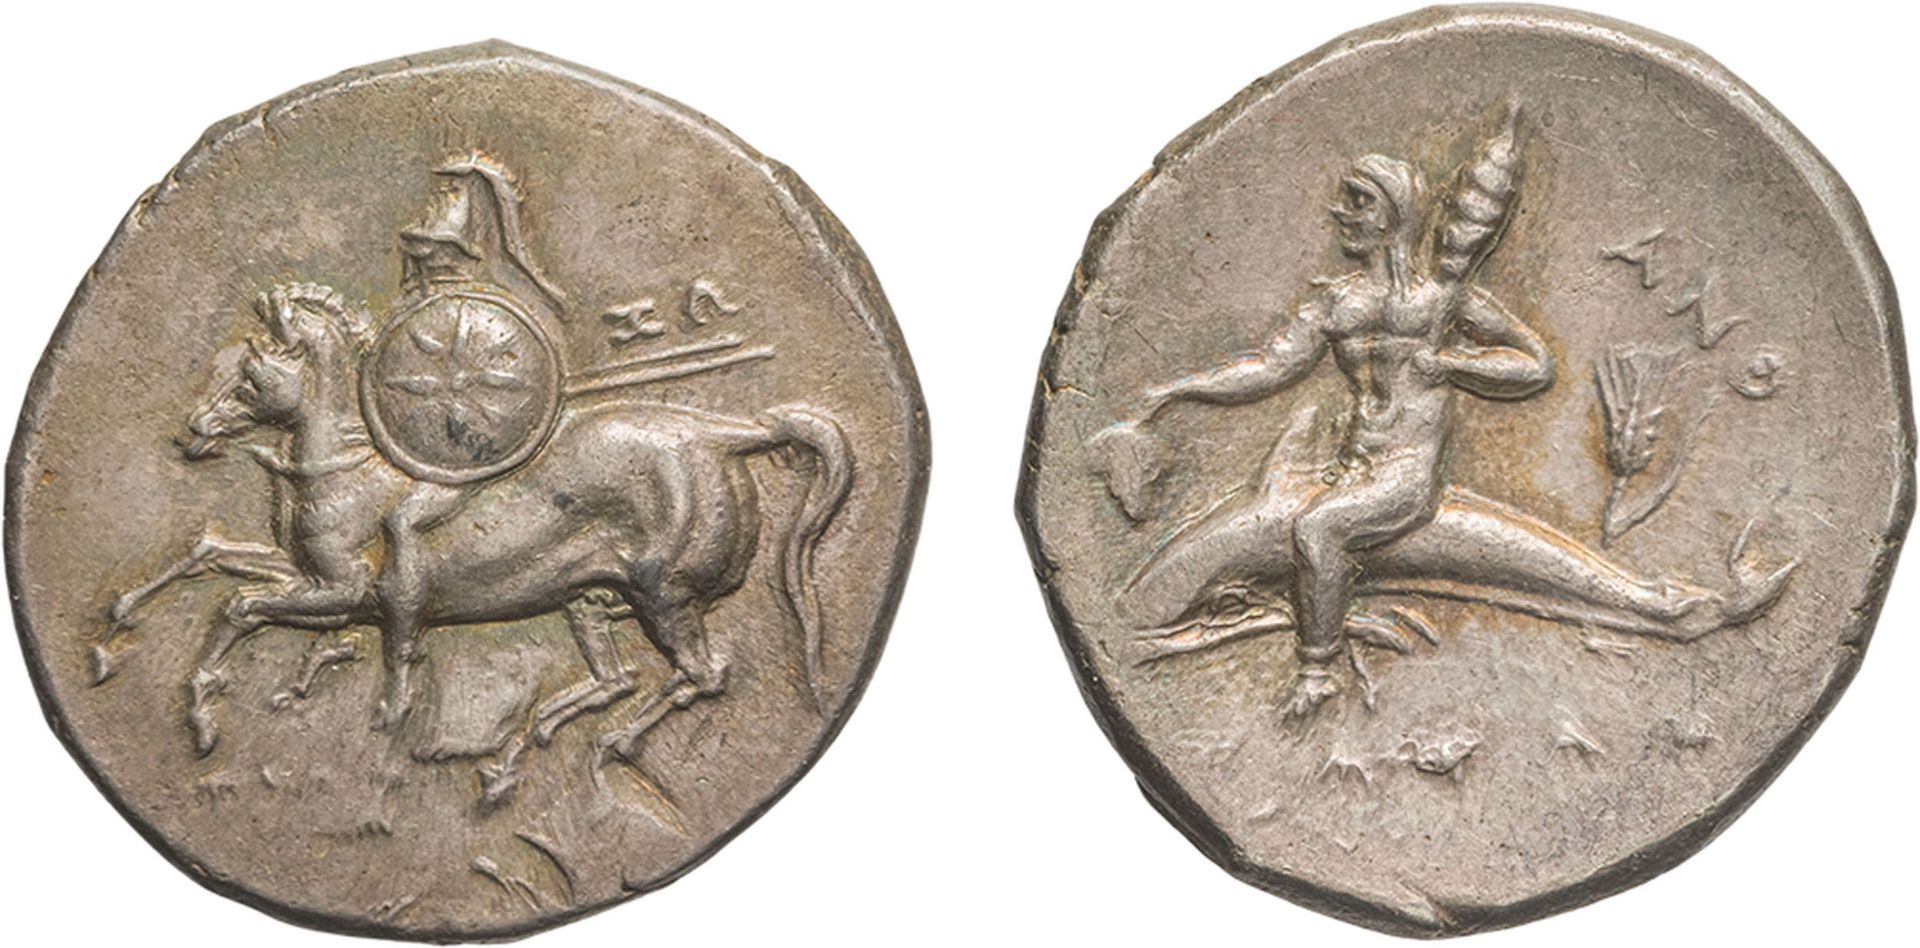 MONETE GRECHE. CALABRIA. TARANTO (CIRCA 281-272 A.C.). NOMOS